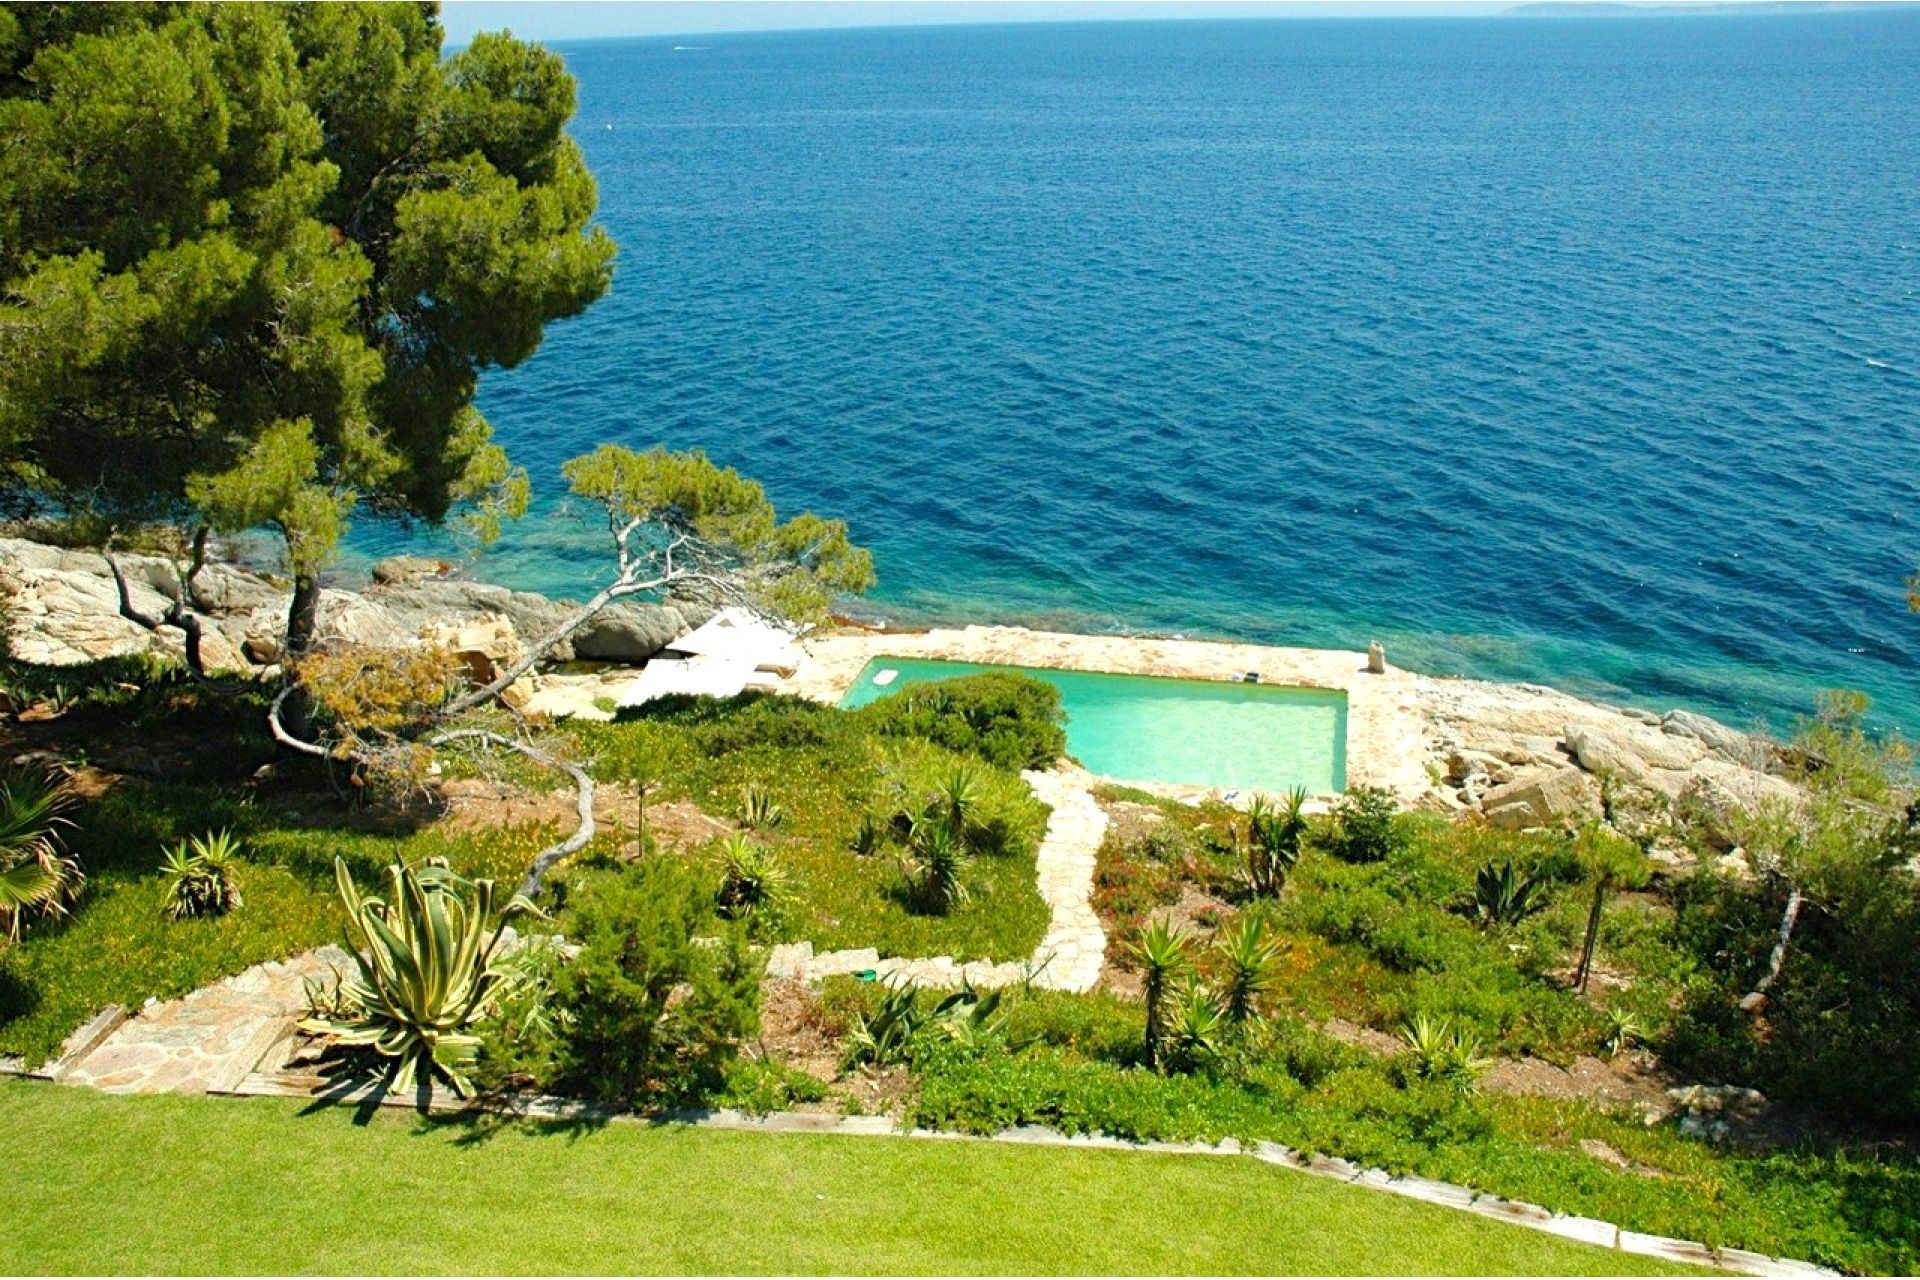 Méditerranée Location Villa with Private pool in Le Lavandou, Côte d'Azur